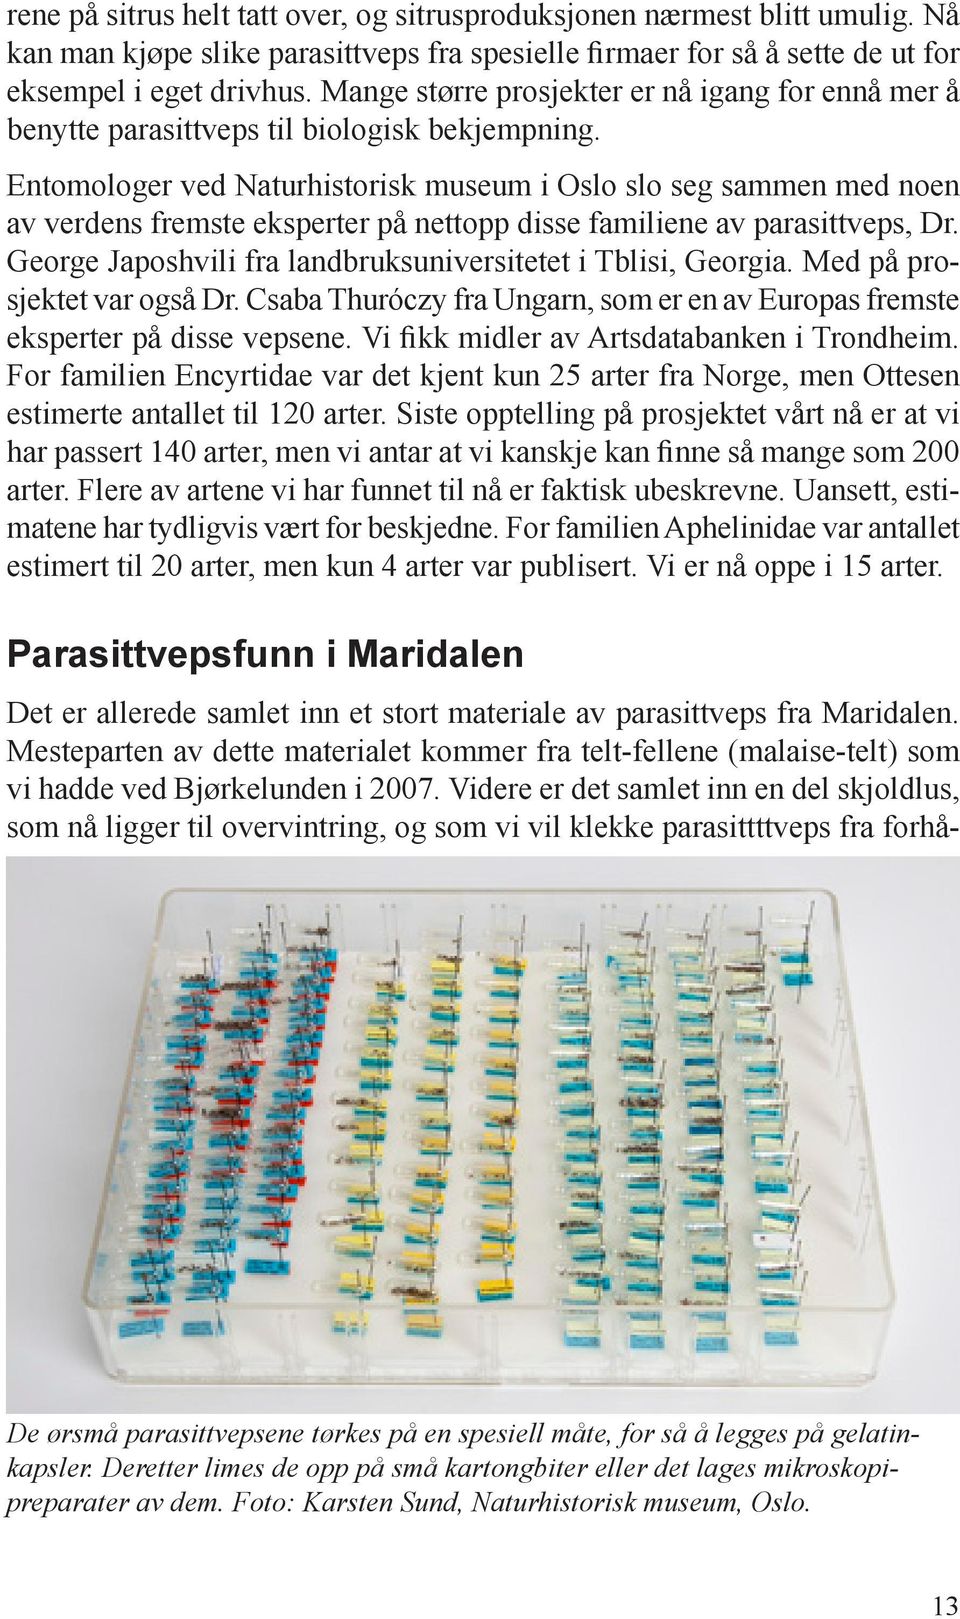 Entomologer ved Naturhistorisk museum i Oslo slo seg sammen med noen av verdens fremste eksperter på nettopp disse familiene av parasittveps, Dr.